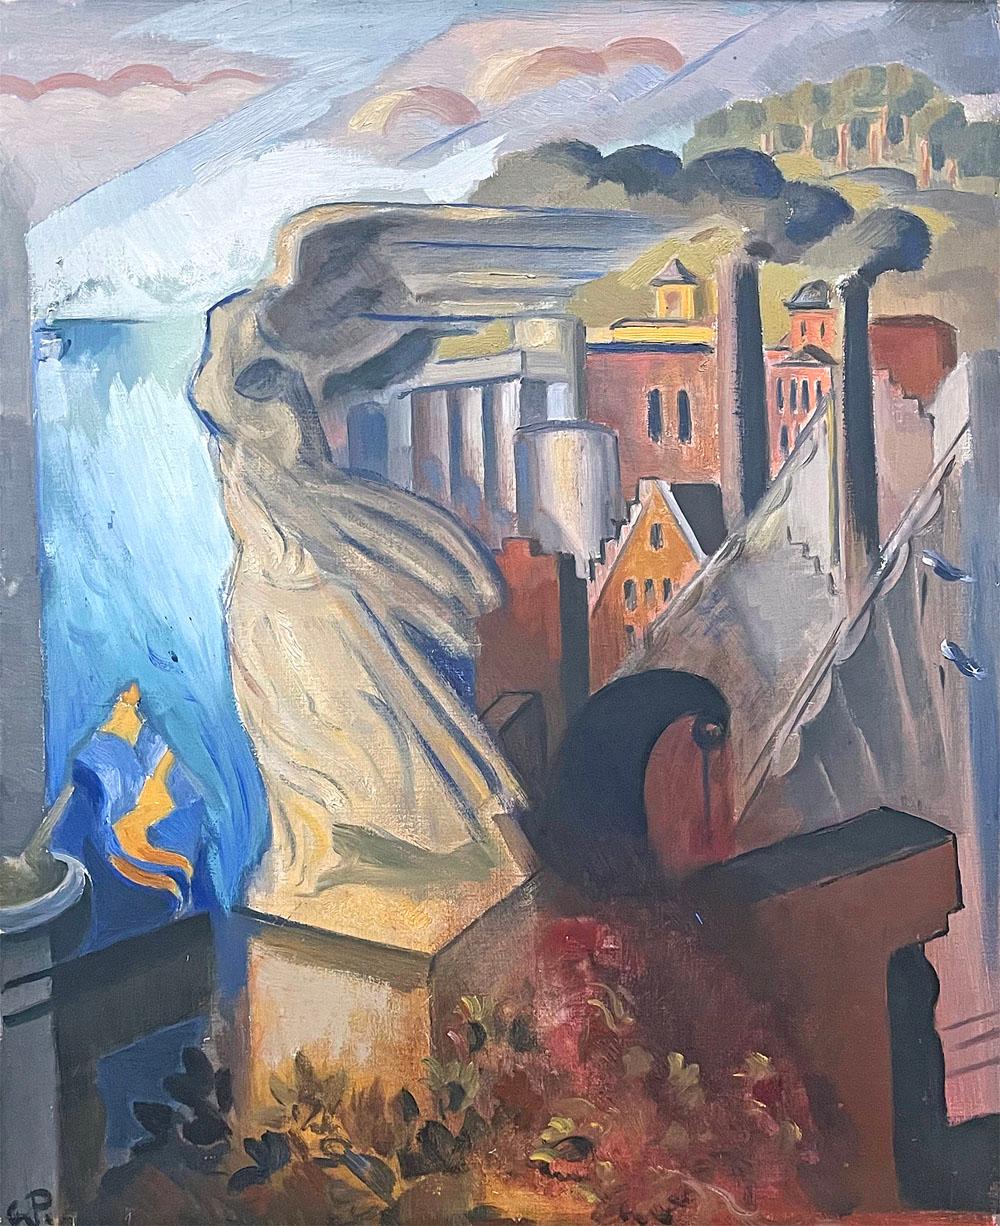 Das wohl größte Werk von Georg Pauli, einem der führenden schwedischen Maler der Moderne in den 1920er, 30er und 40er Jahren, zeigt die große Nike-Skulptur auf dem Gelände des Hauses von Prinz Eugen am Kap Waldemar im Zentrum Stockholms (auf